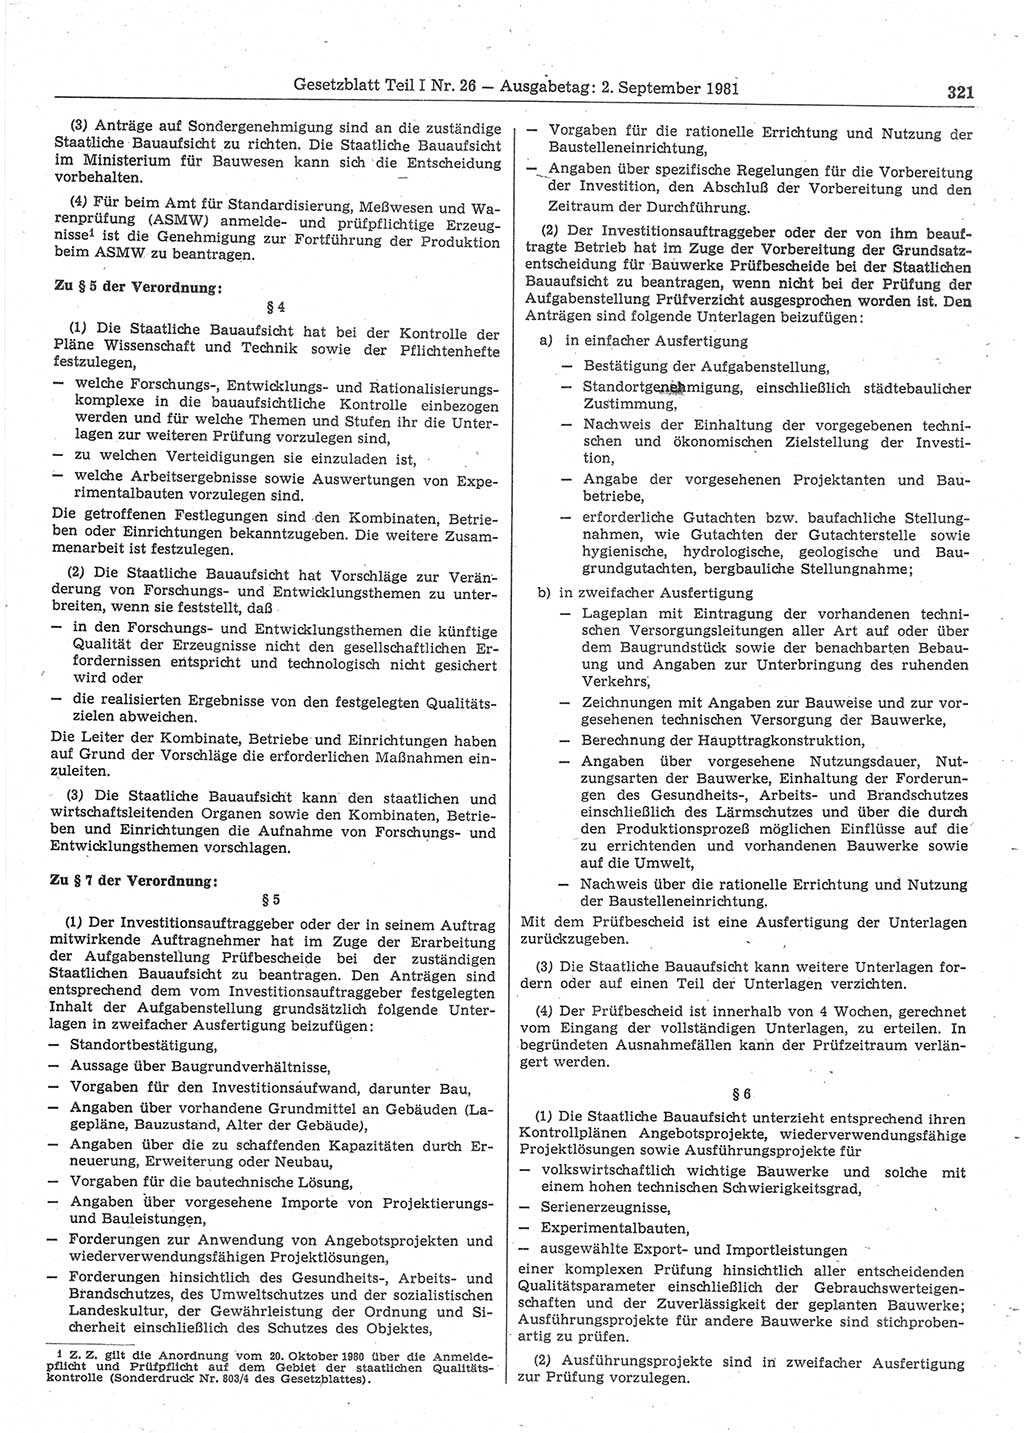 Gesetzblatt (GBl.) der Deutschen Demokratischen Republik (DDR) Teil Ⅰ 1981, Seite 321 (GBl. DDR Ⅰ 1981, S. 321)